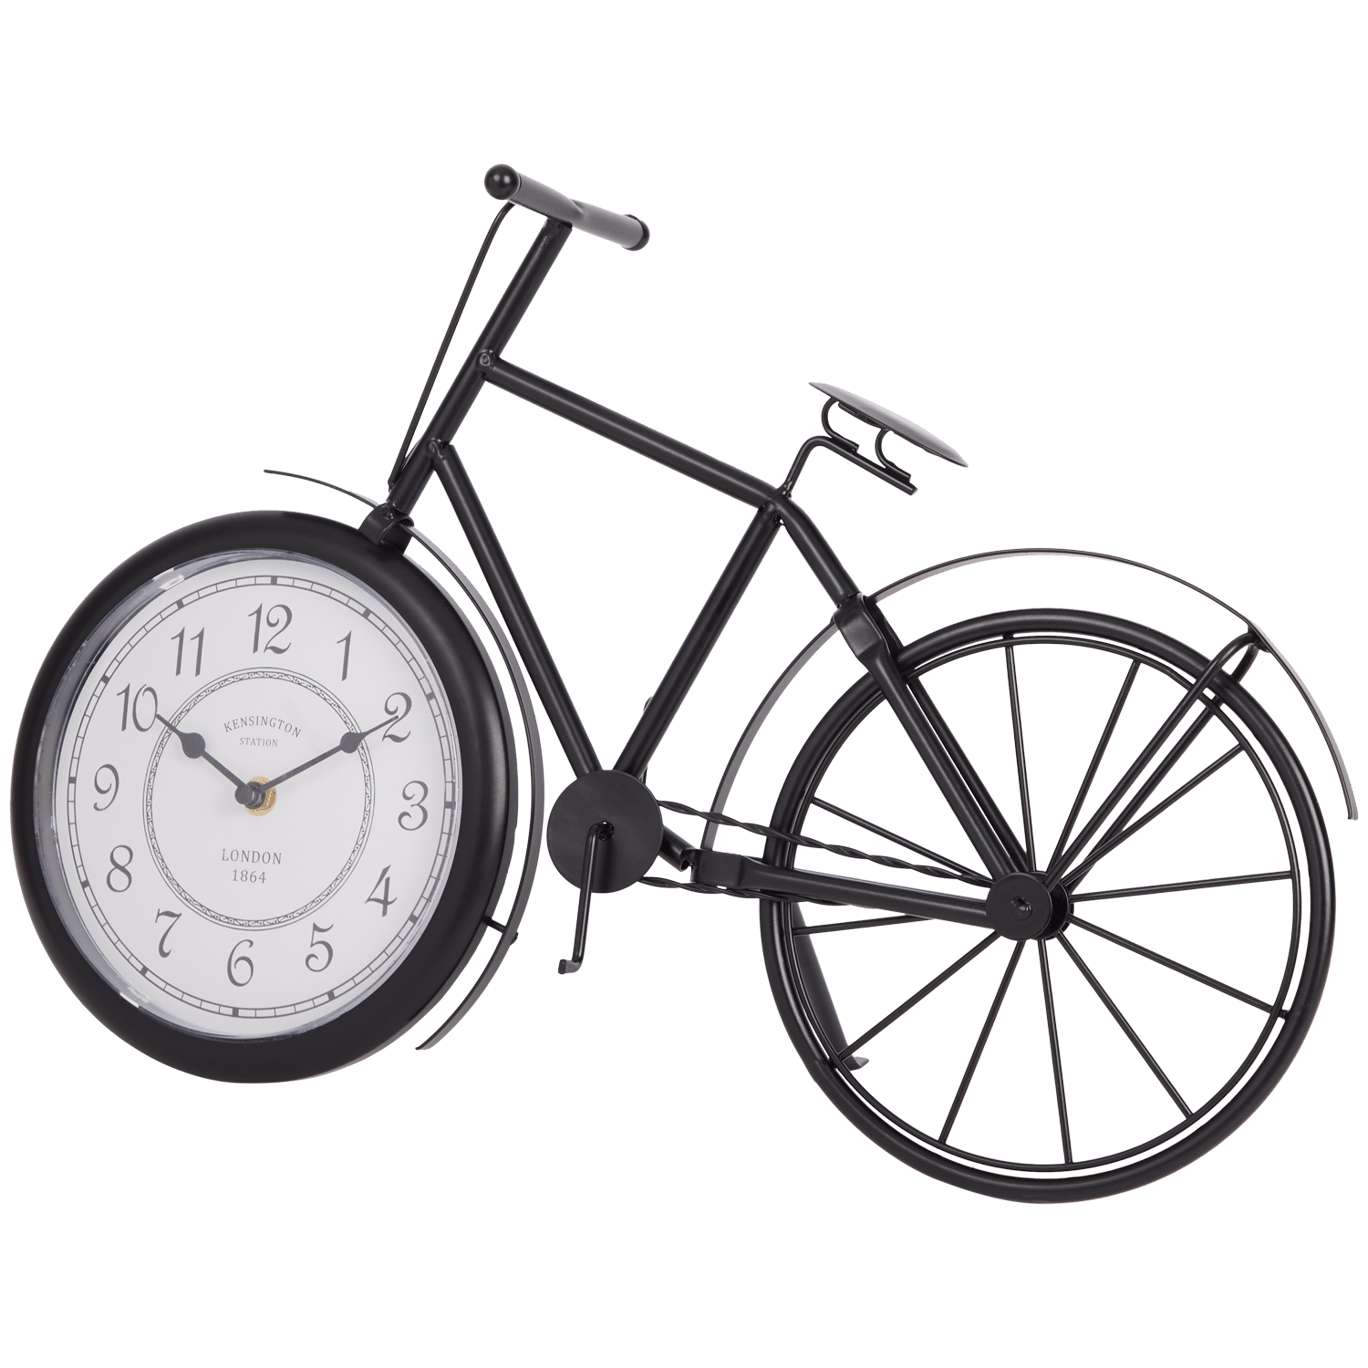 Orologio a forma di bici